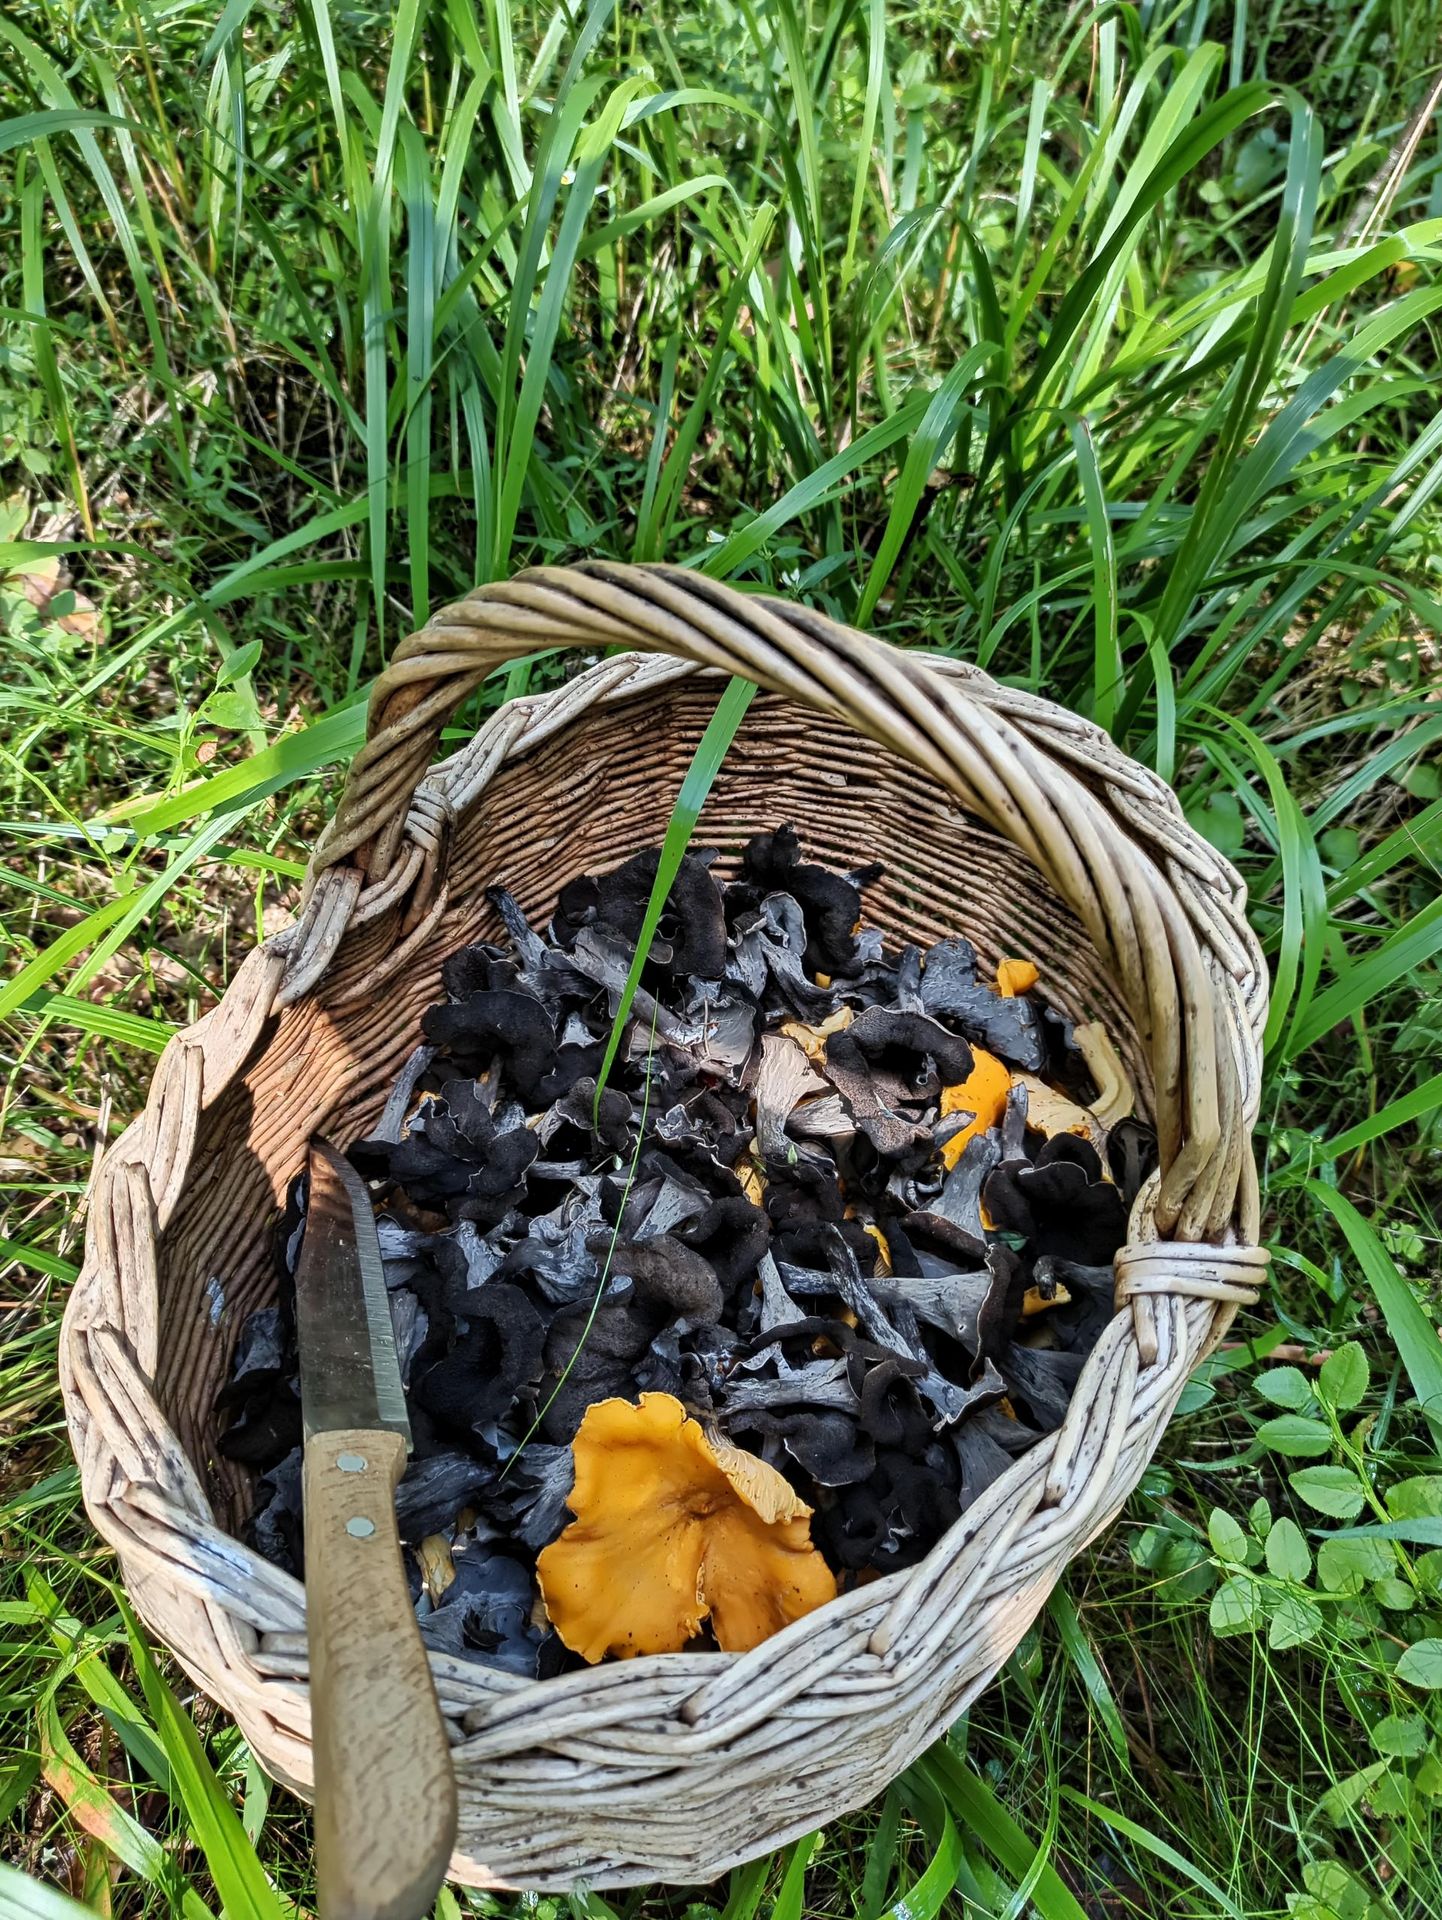 Черный вороночник - ценный съедобный гриб, который ни в чем не уступает лисичкам и везде растет в тех же местах, часто большими группами.